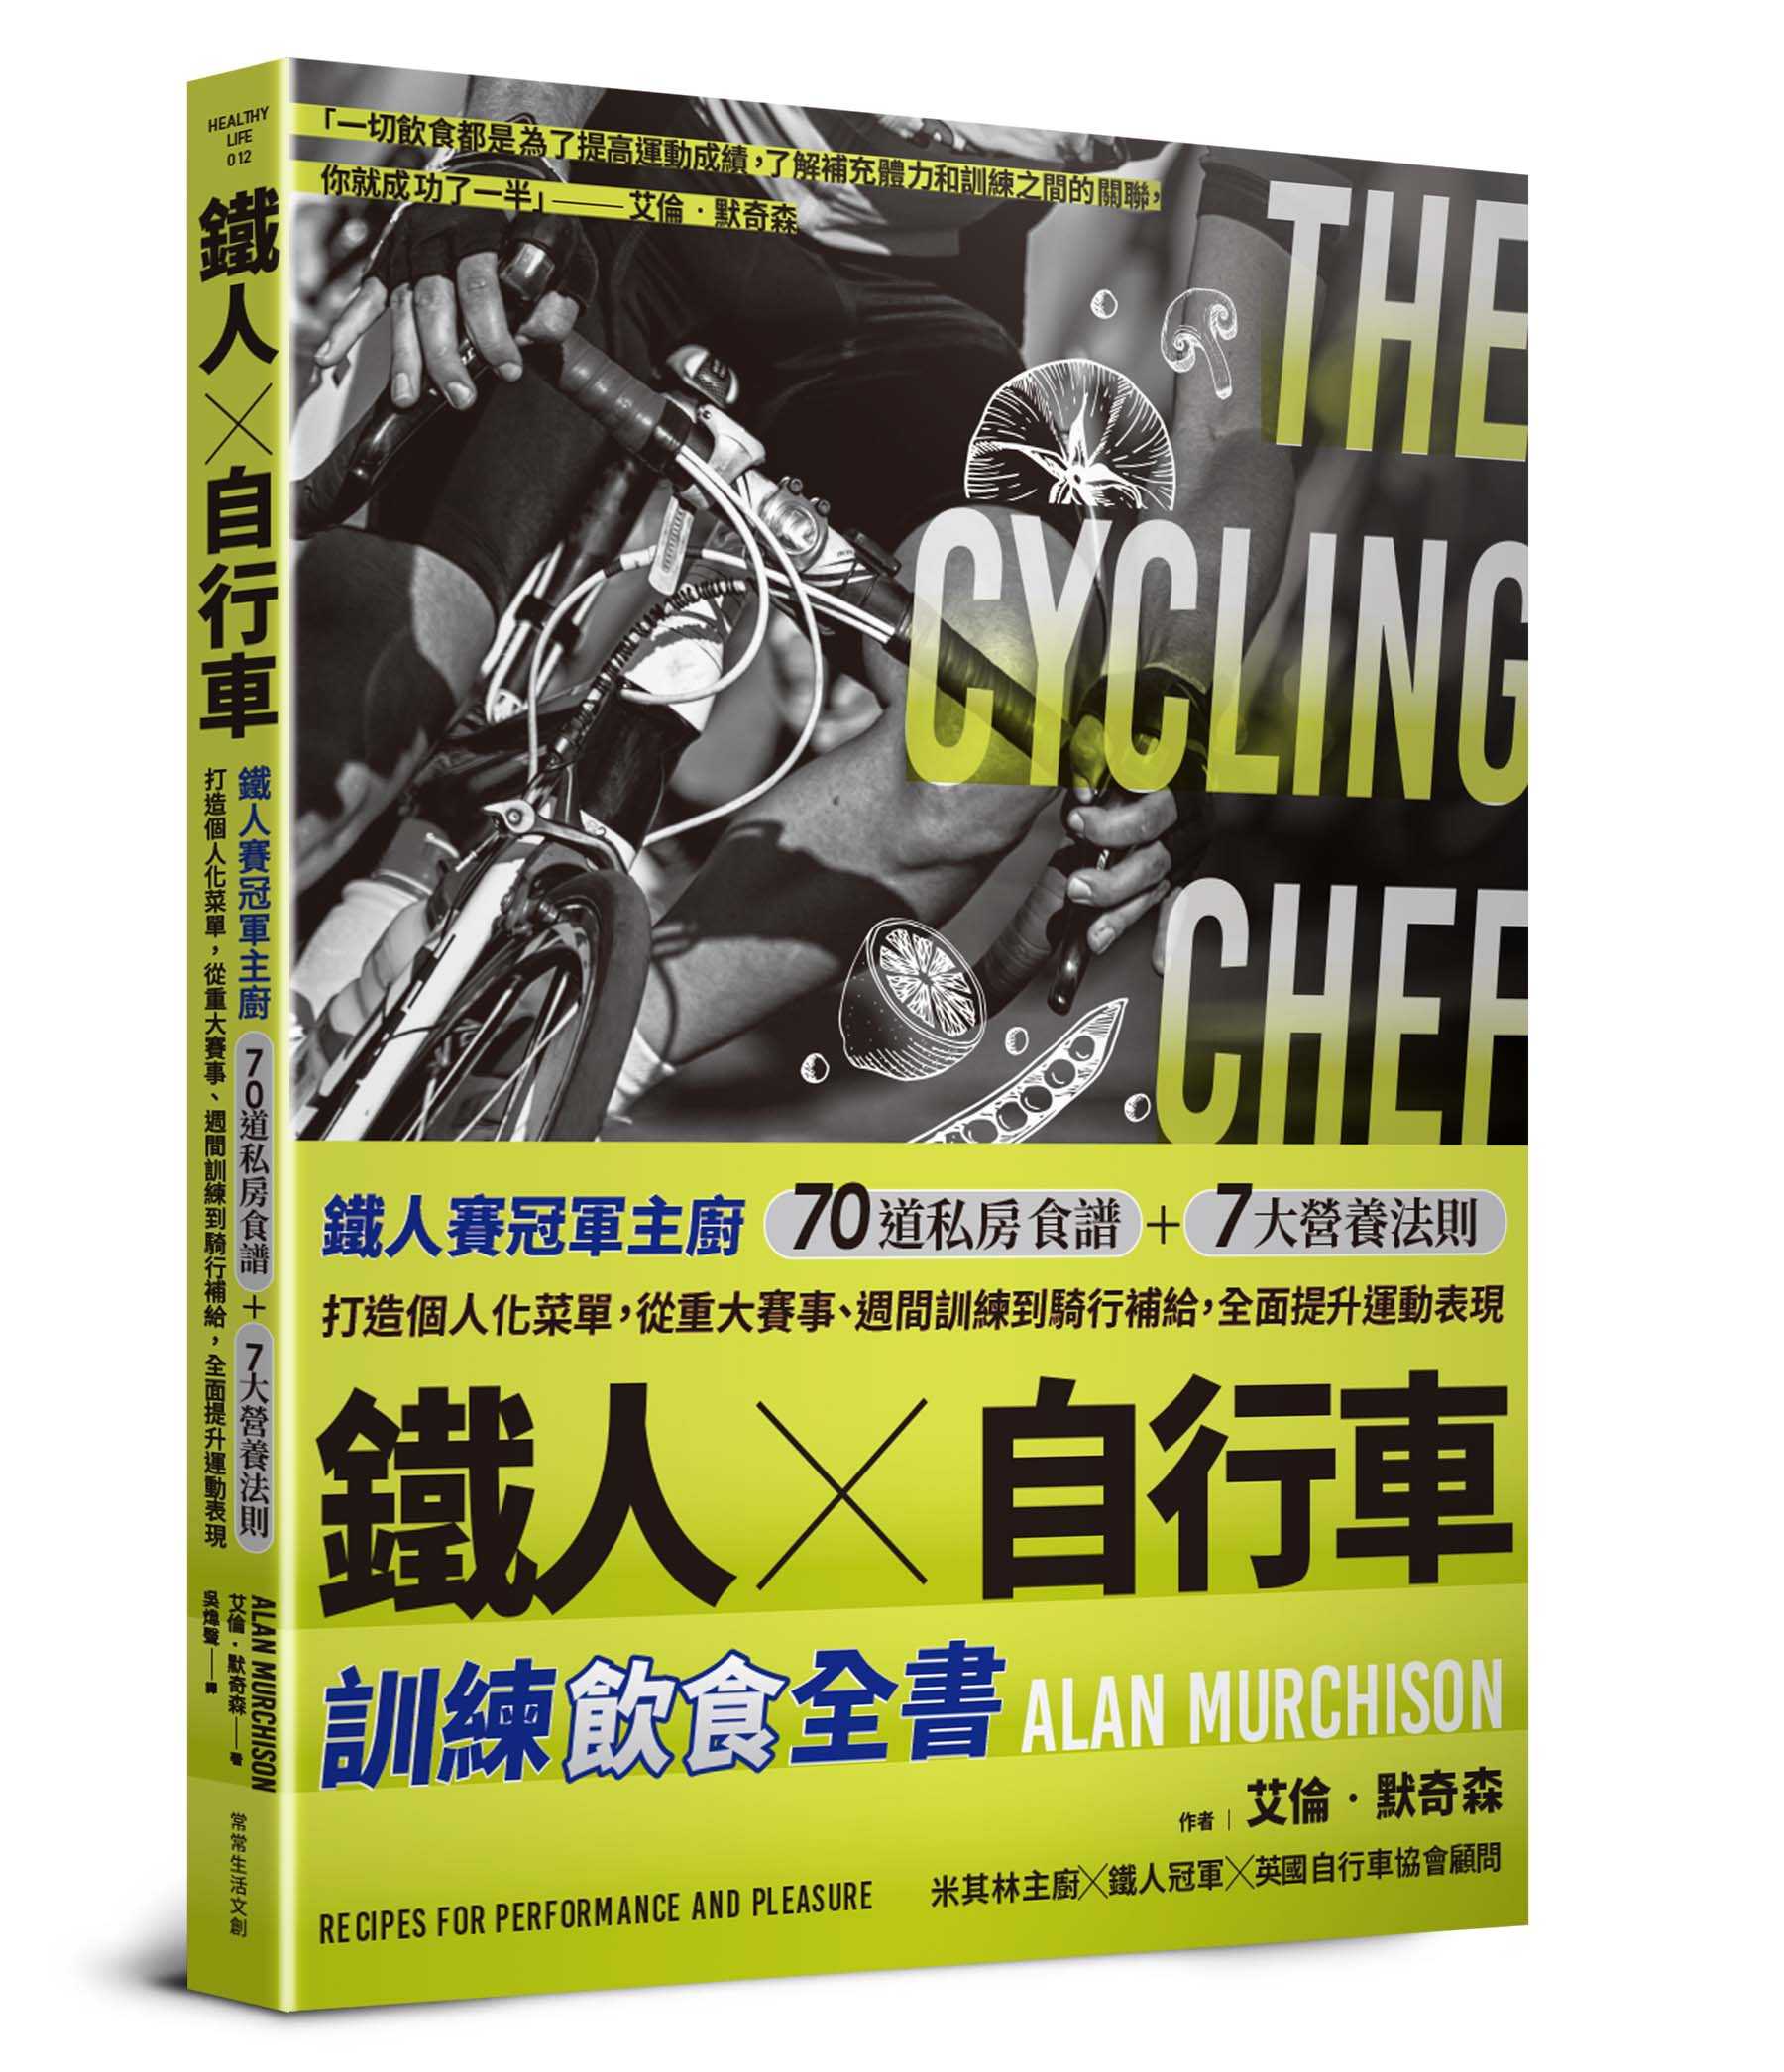 【常常】鐵人X自行車 訓練飲食全書:鐵人賽冠軍主廚70道私房食譜+7大營養法則打造個人化菜單，從重大賽事、週間訓練到騎行